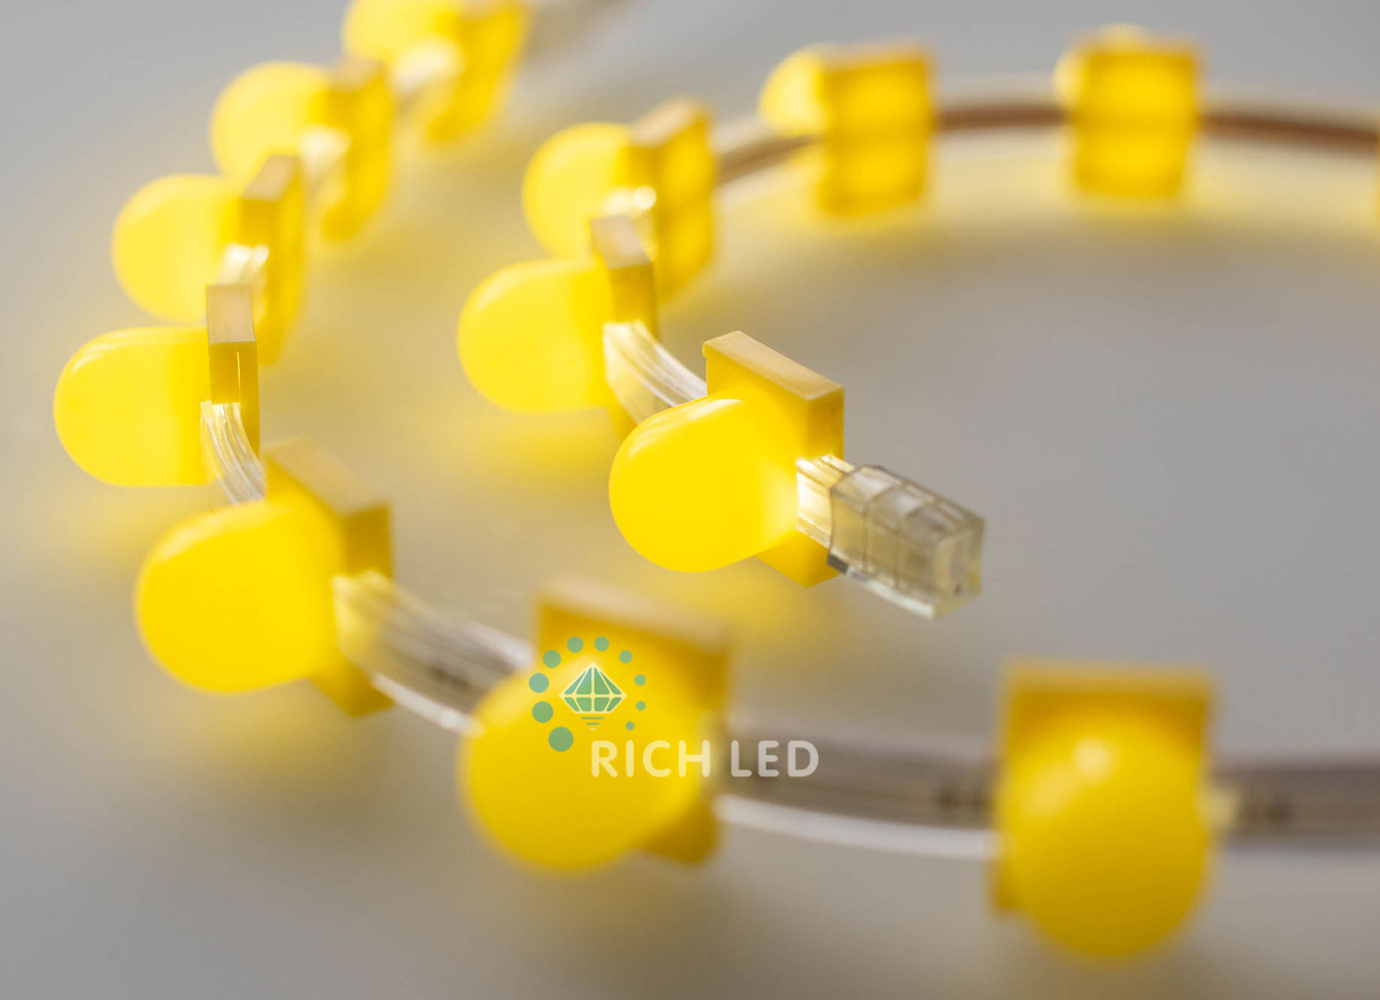 Качественная картинка Цветной съемный колпачек для клипсолайта RichLed.Размер 3х2х3, Цвет желтый